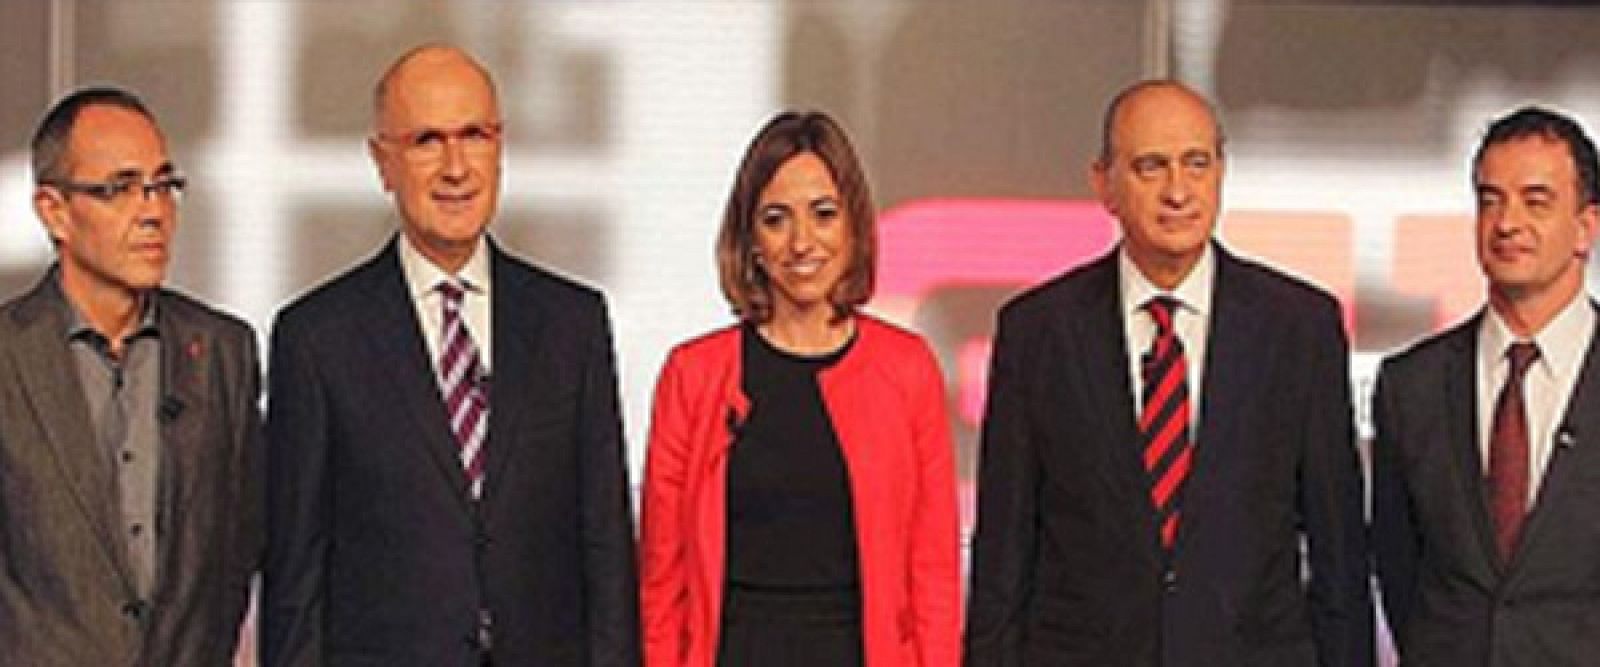 Els cinc candidats per Barcelona